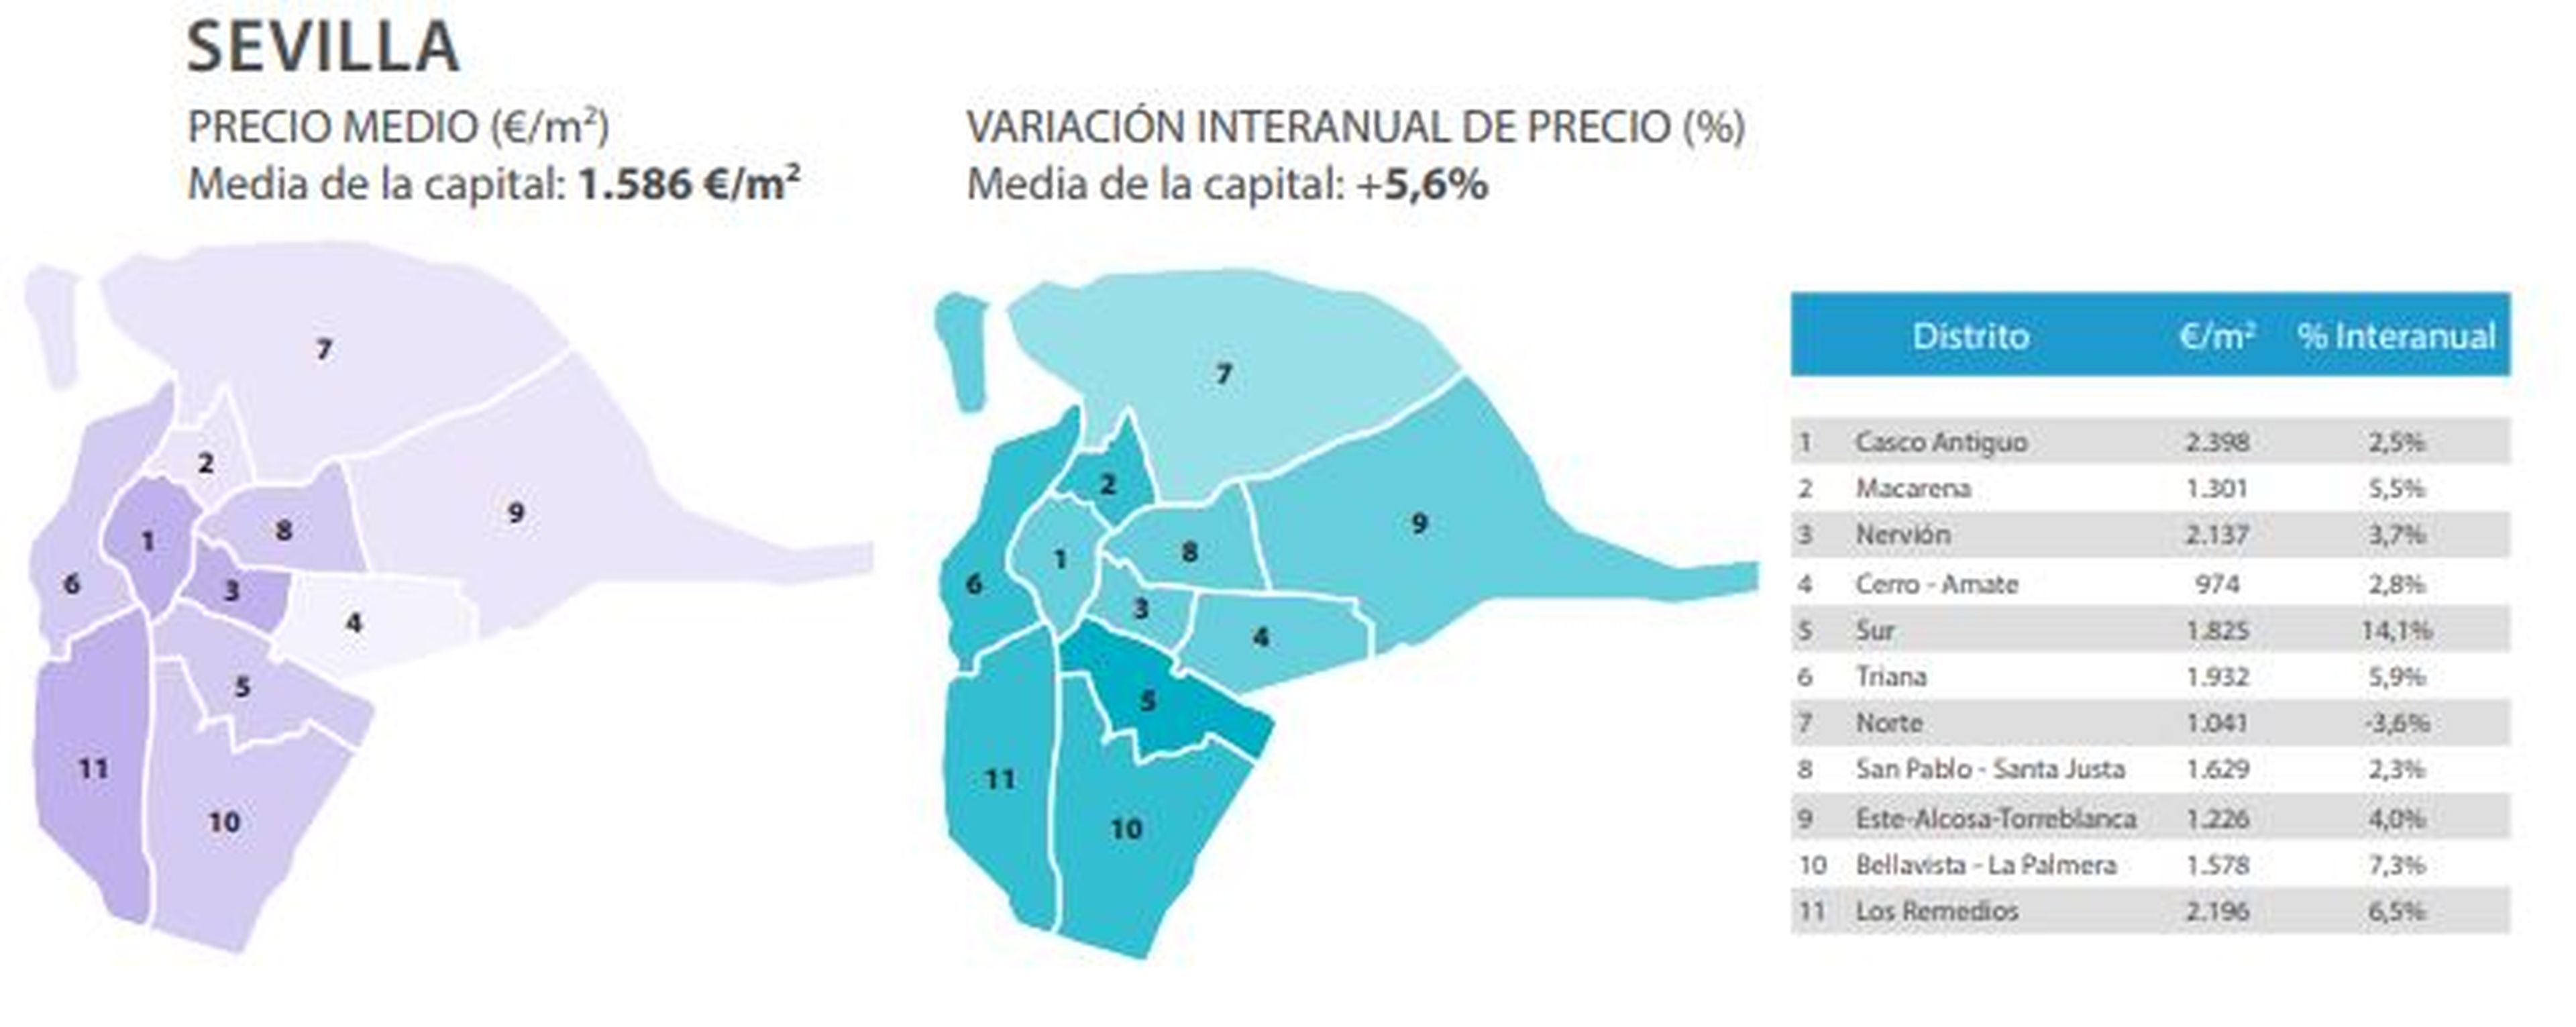 Evolución del precio medio del metro cuadrado en Sevilla